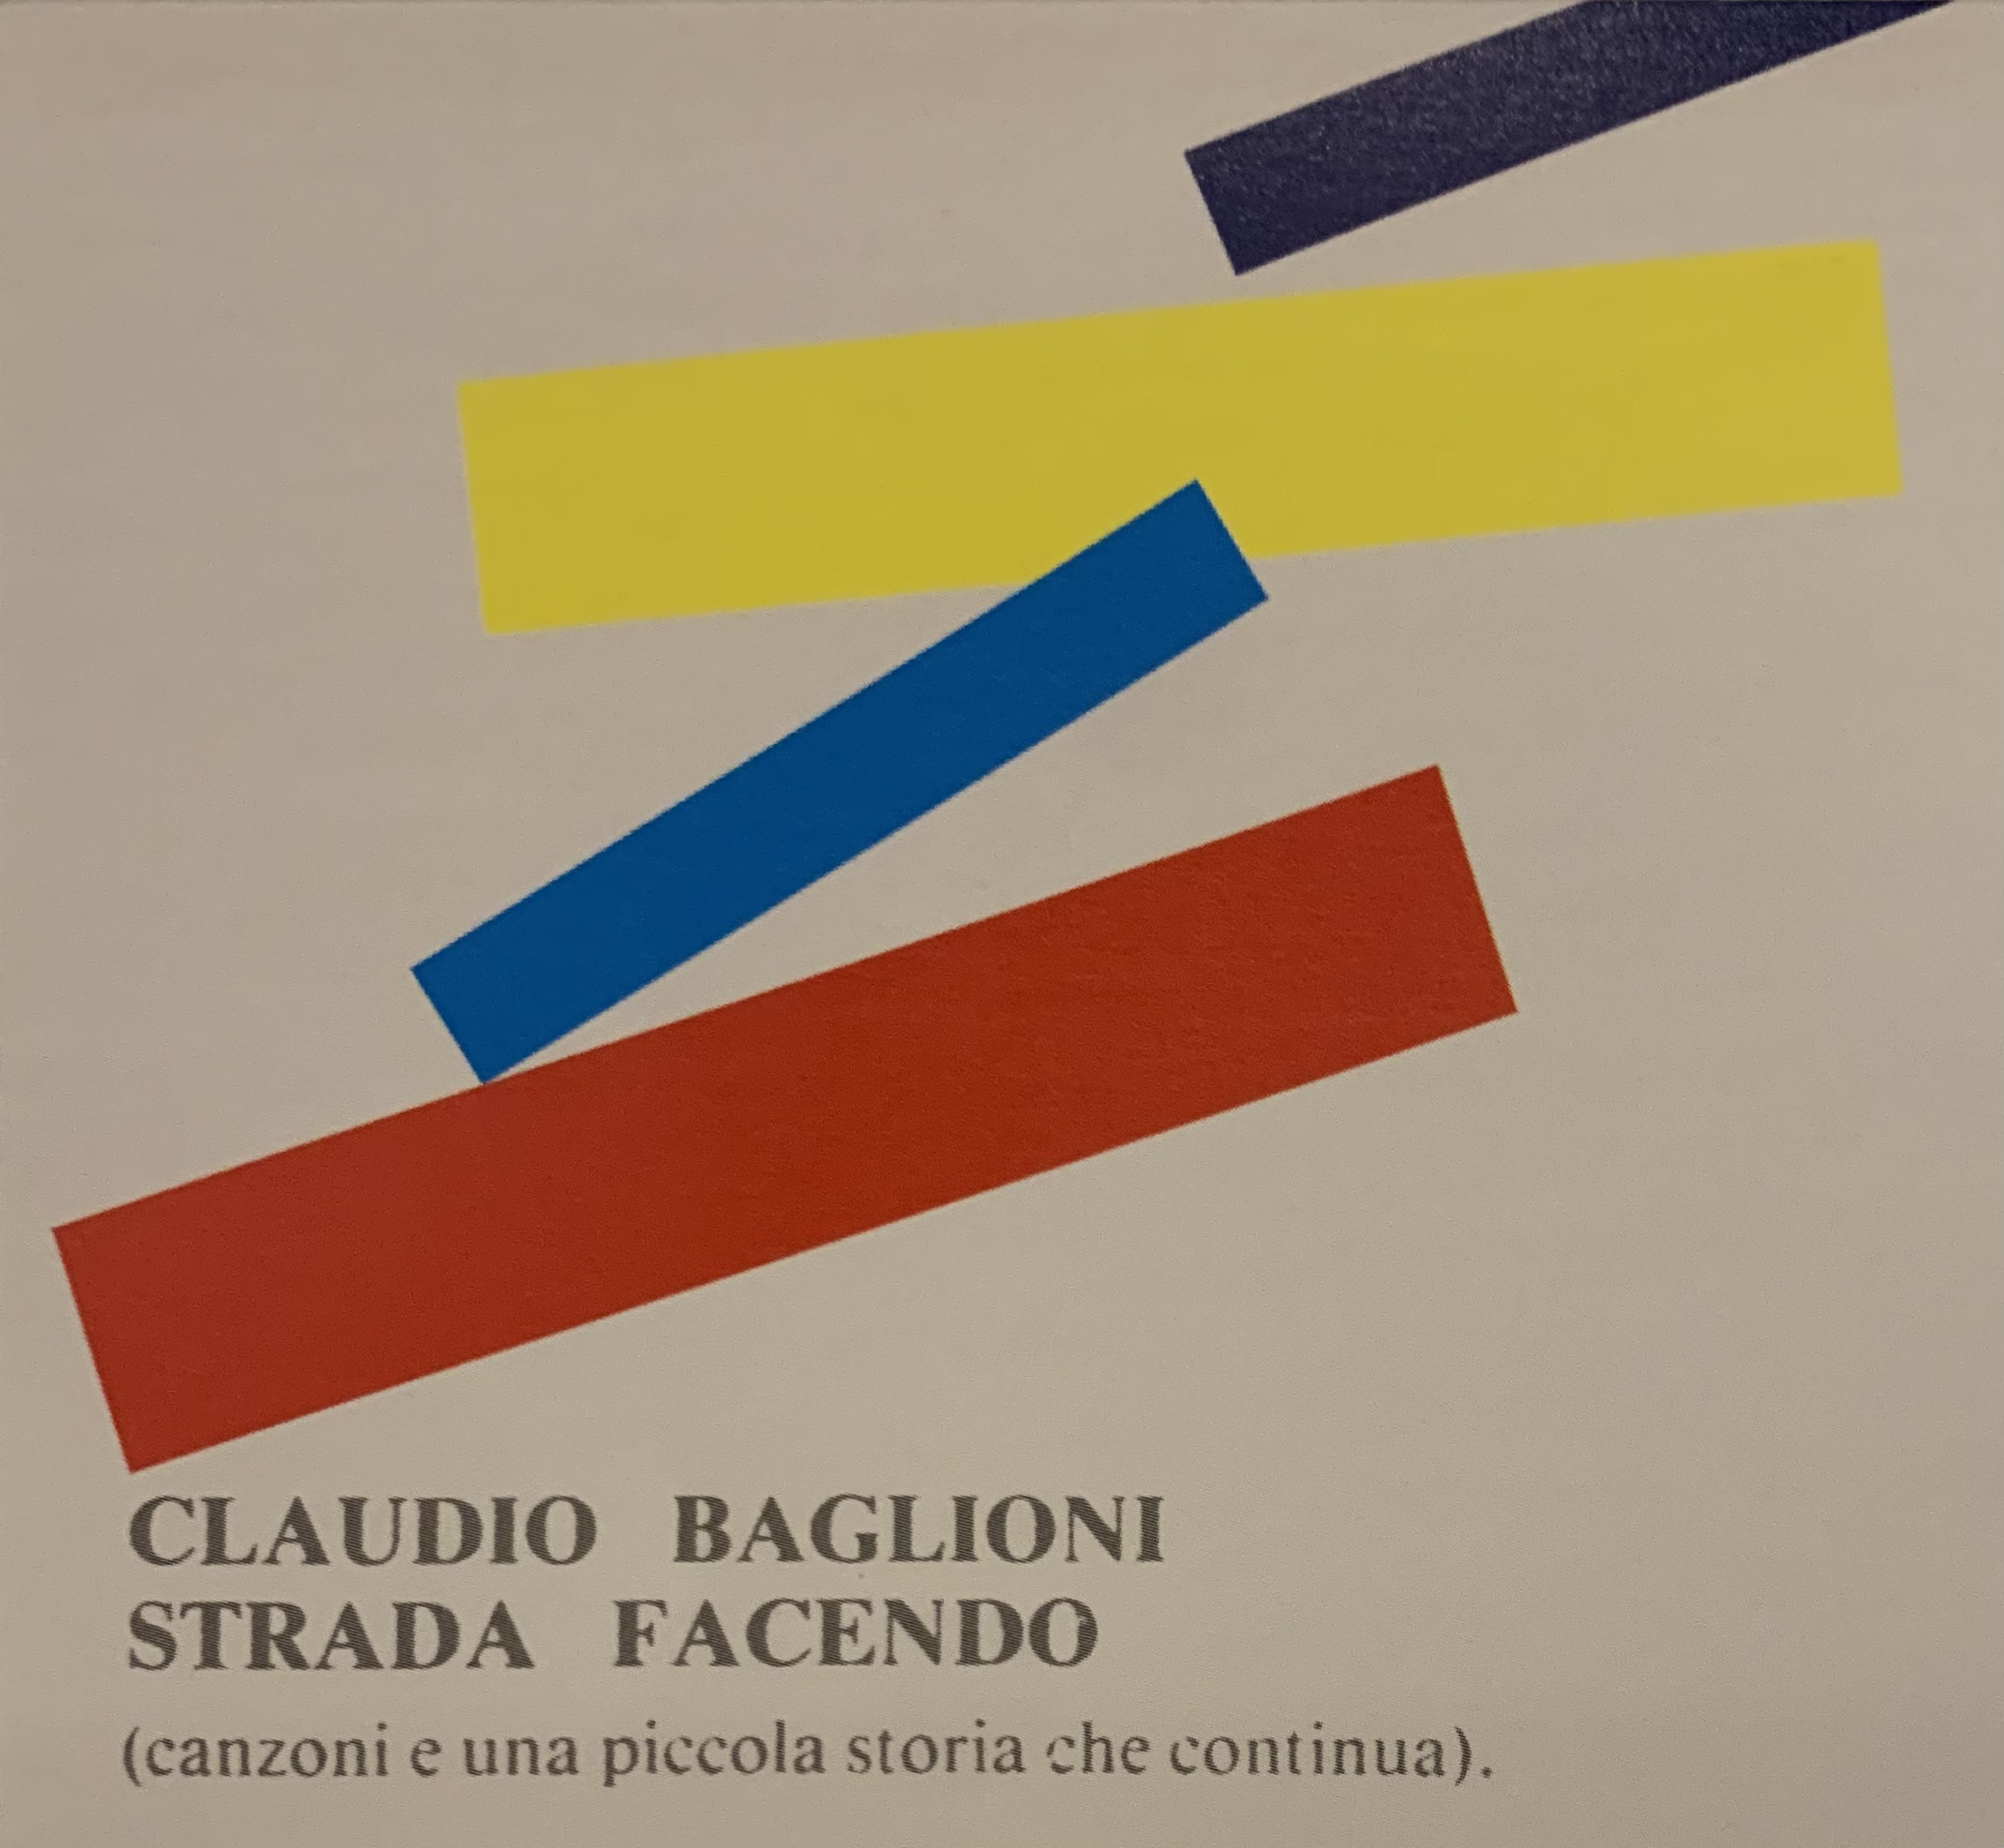 Strada facendo (album Claudio Baglioni) - Wikipedia